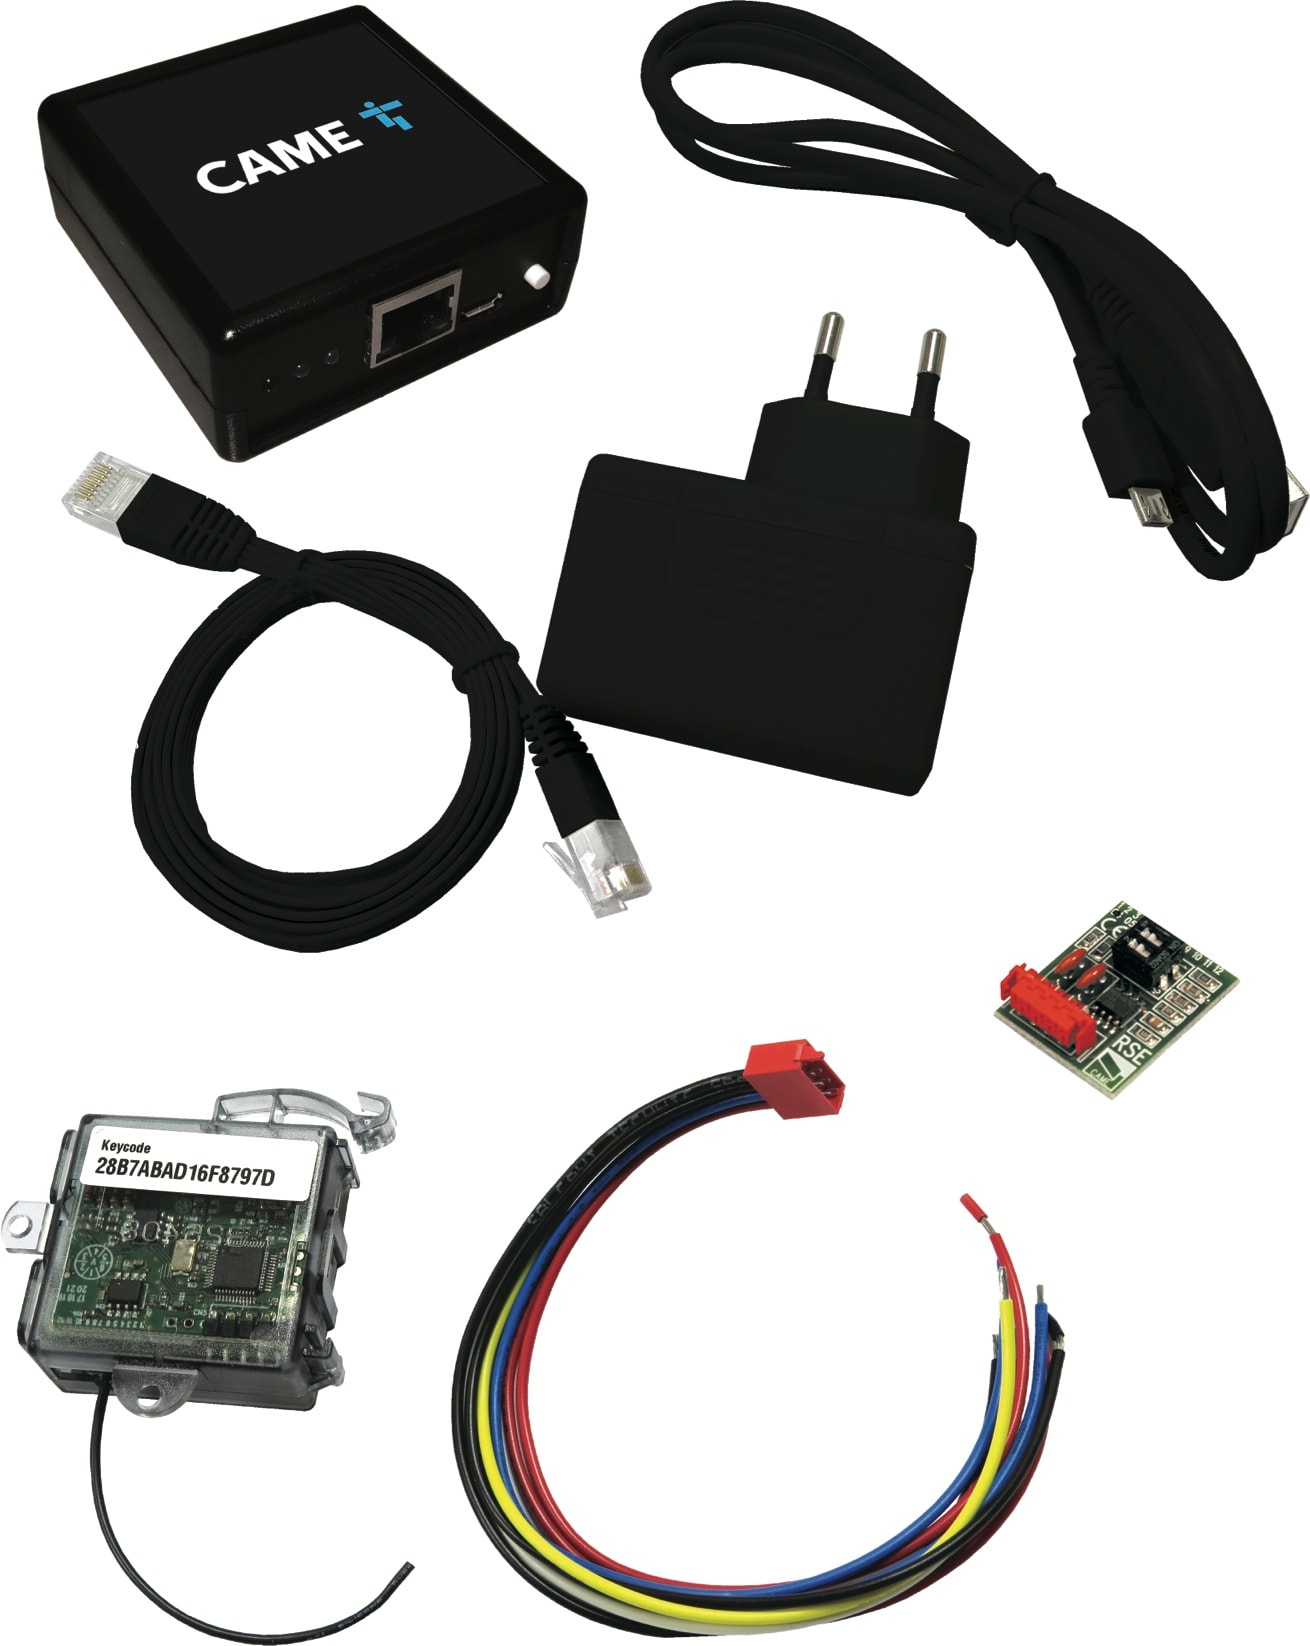 Came - Kit Passerelle Ethernet + Module Esclave